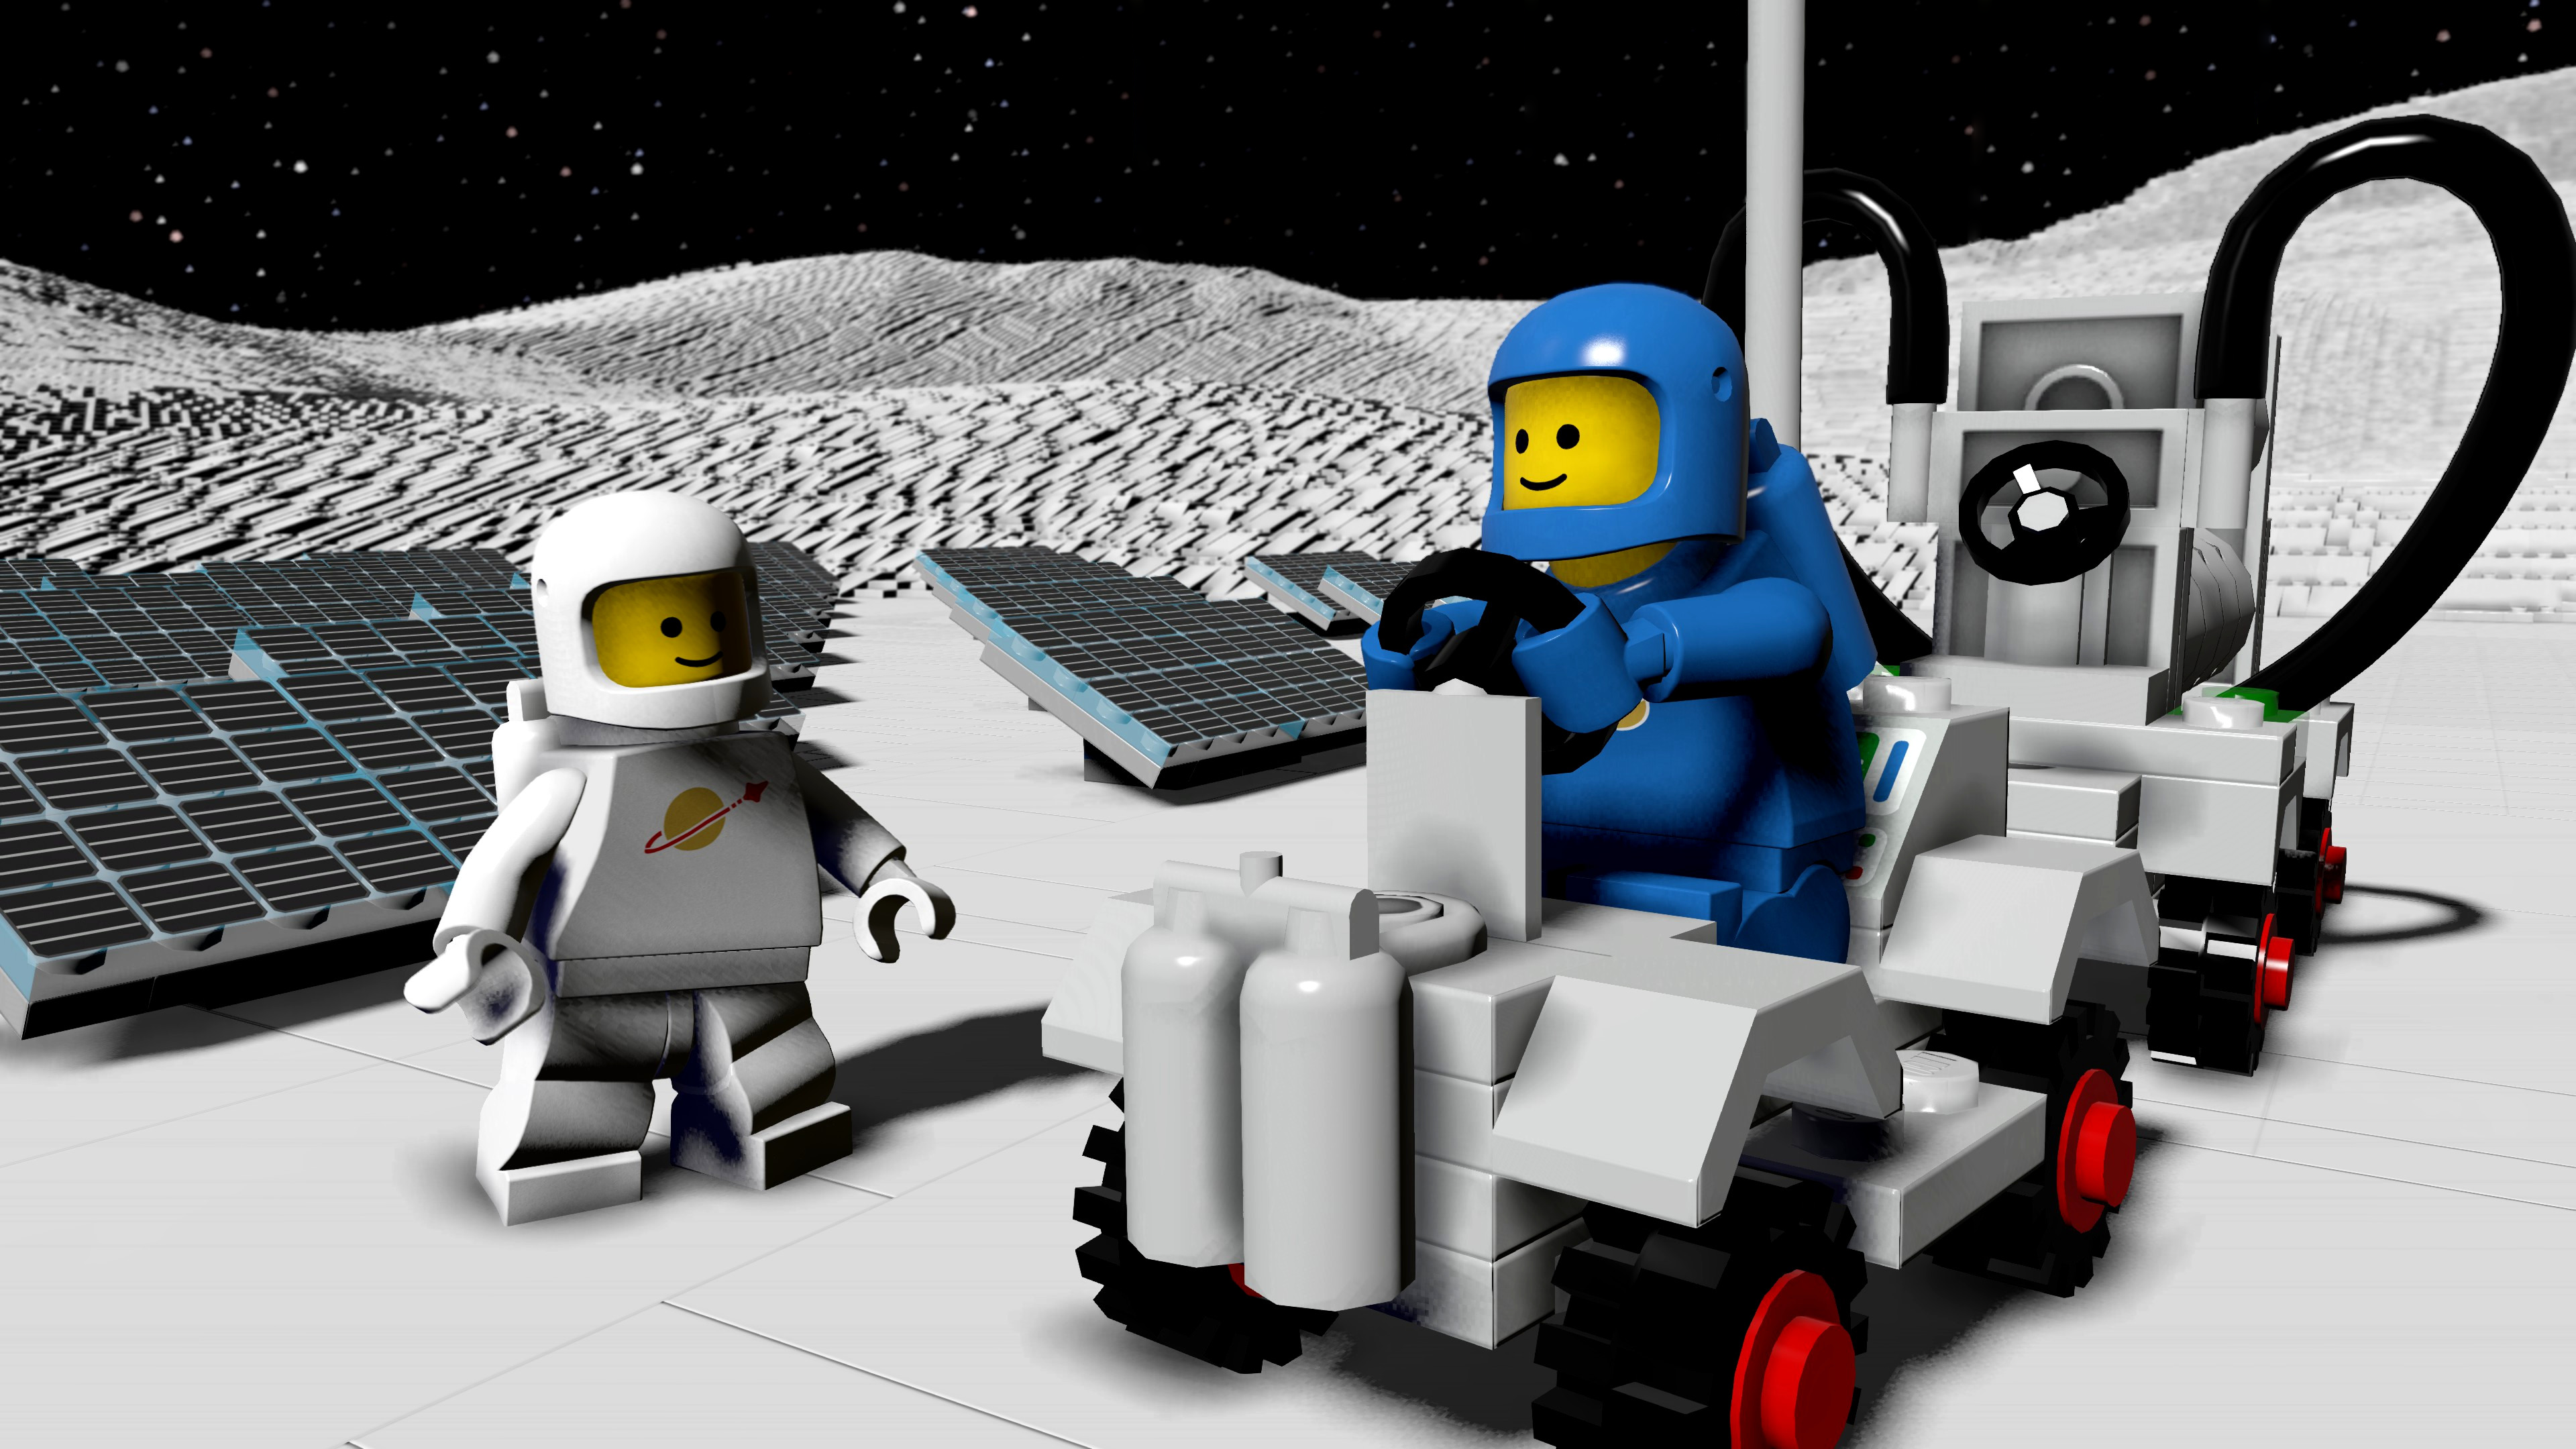 LEGO Worlds Xbox